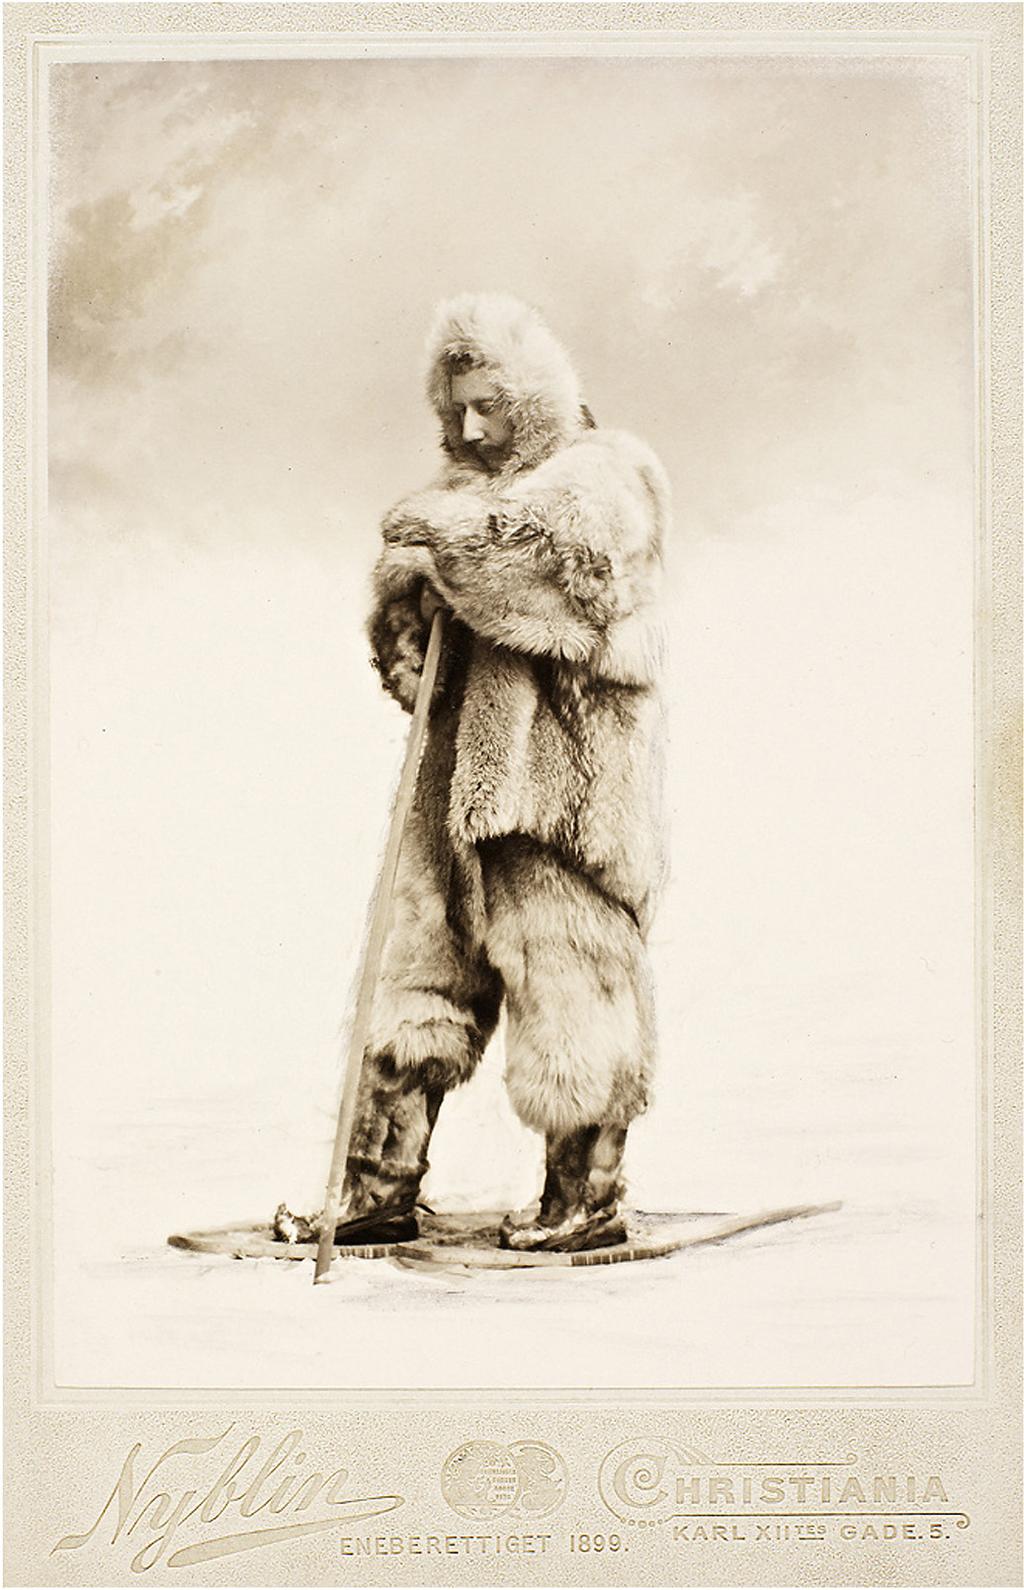 LOT 2 Peter Blake Dartford, UK 1932 Roald Amundsen, 2012 Inkjet on Somerset Satin Enchanced, 330 gsm 121.92 x 101.